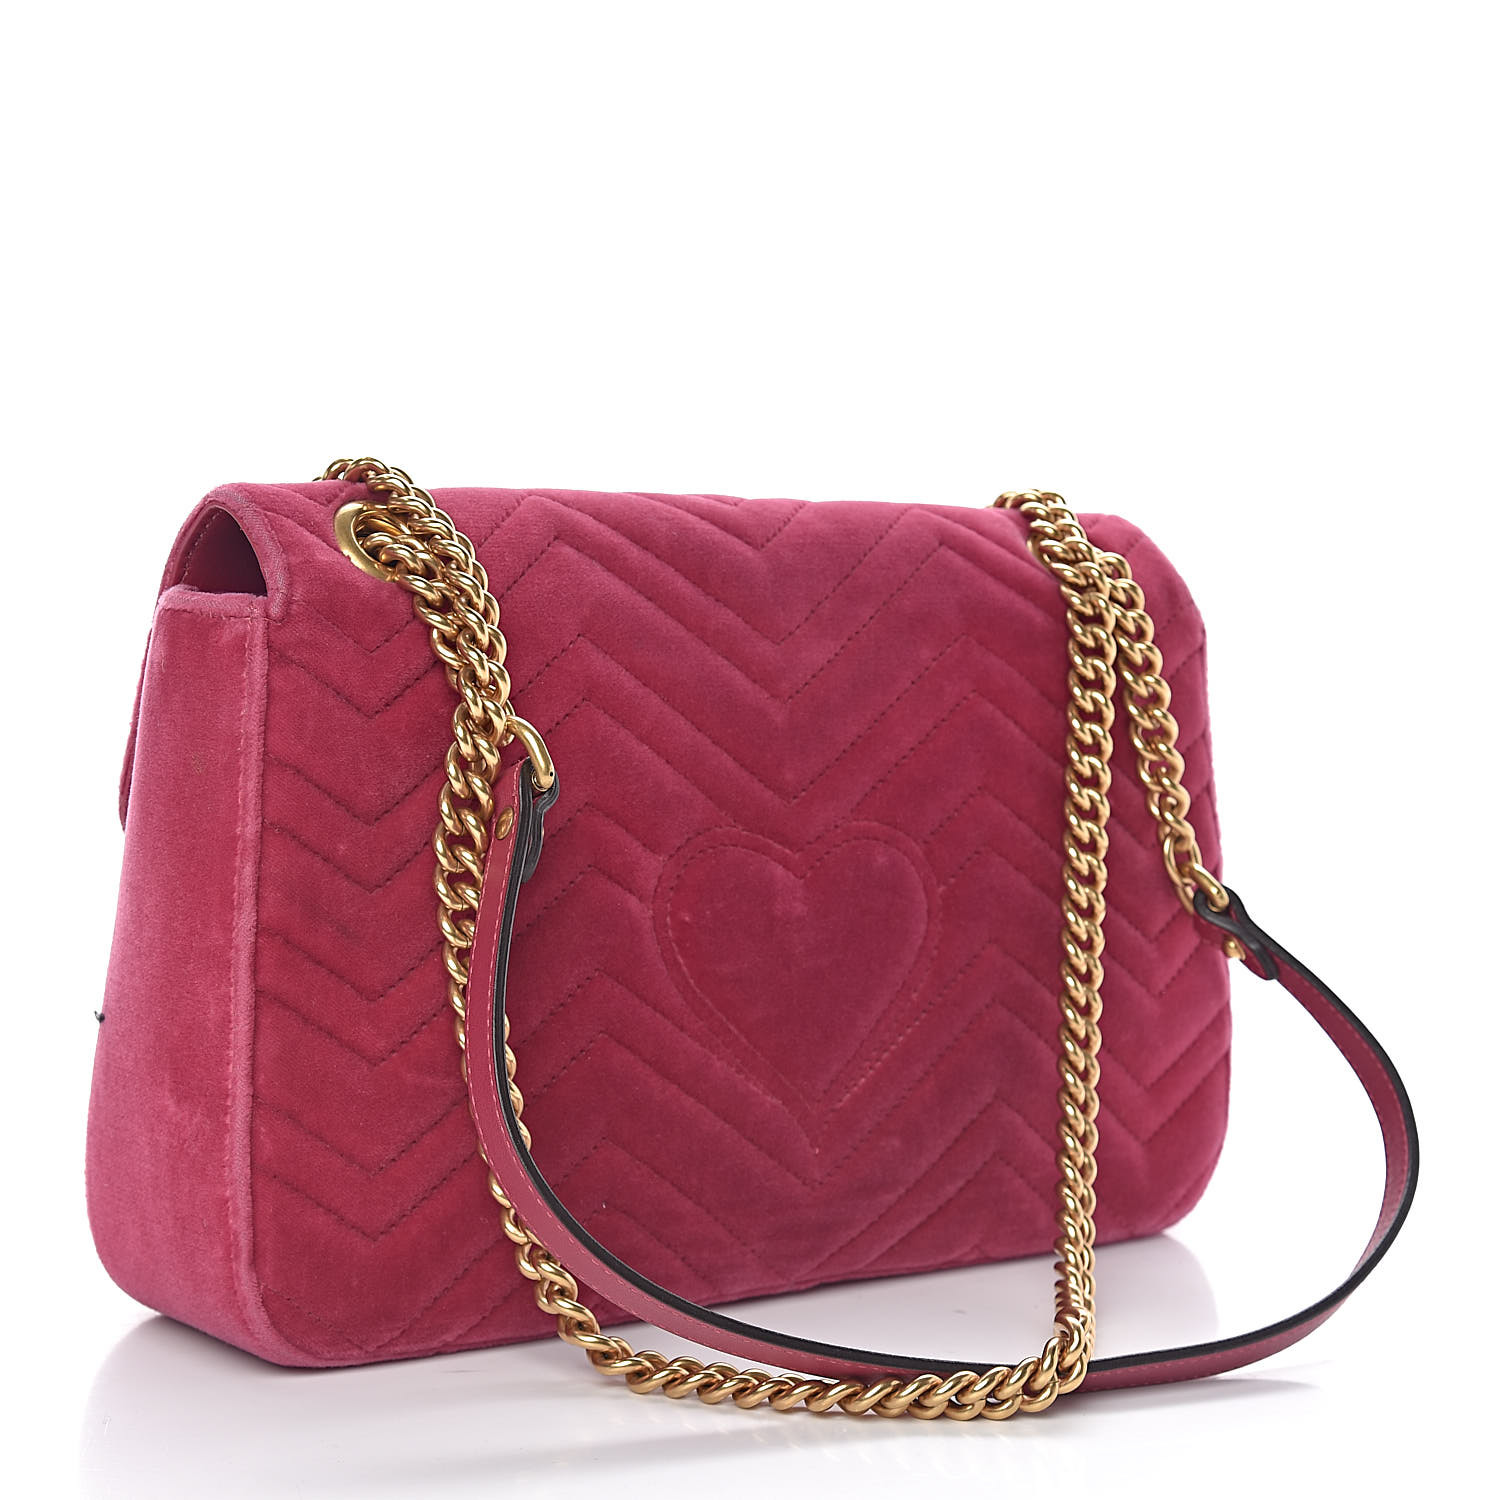 GUCCI Velvet Embroidered Medium Blind For Love Marmont Shoulder Bag Pink 487354